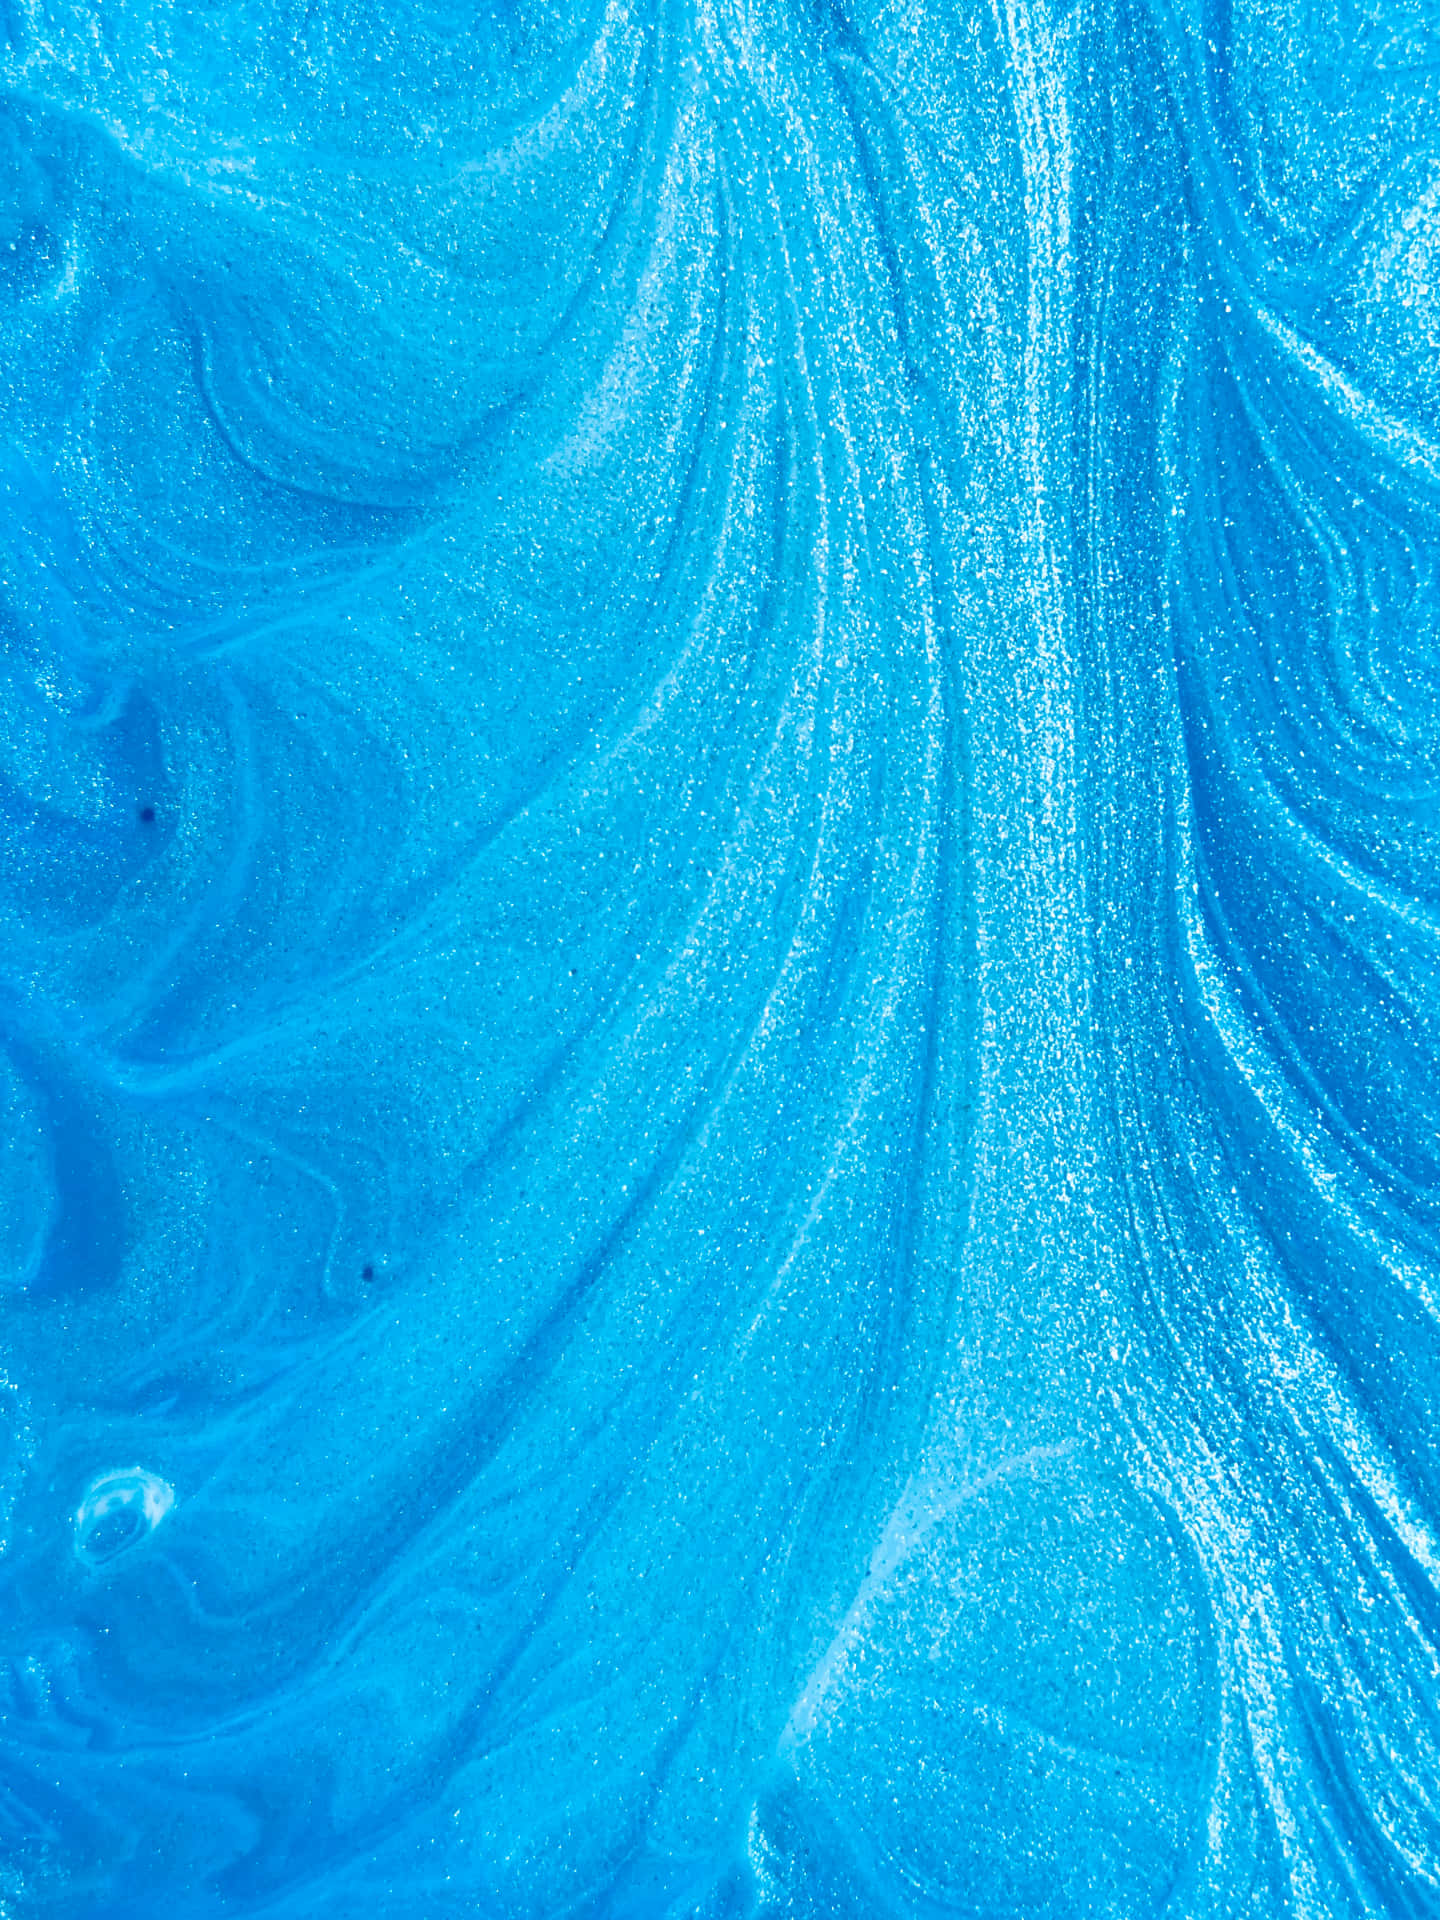 Saftigedetaljer I Tiffany-blå